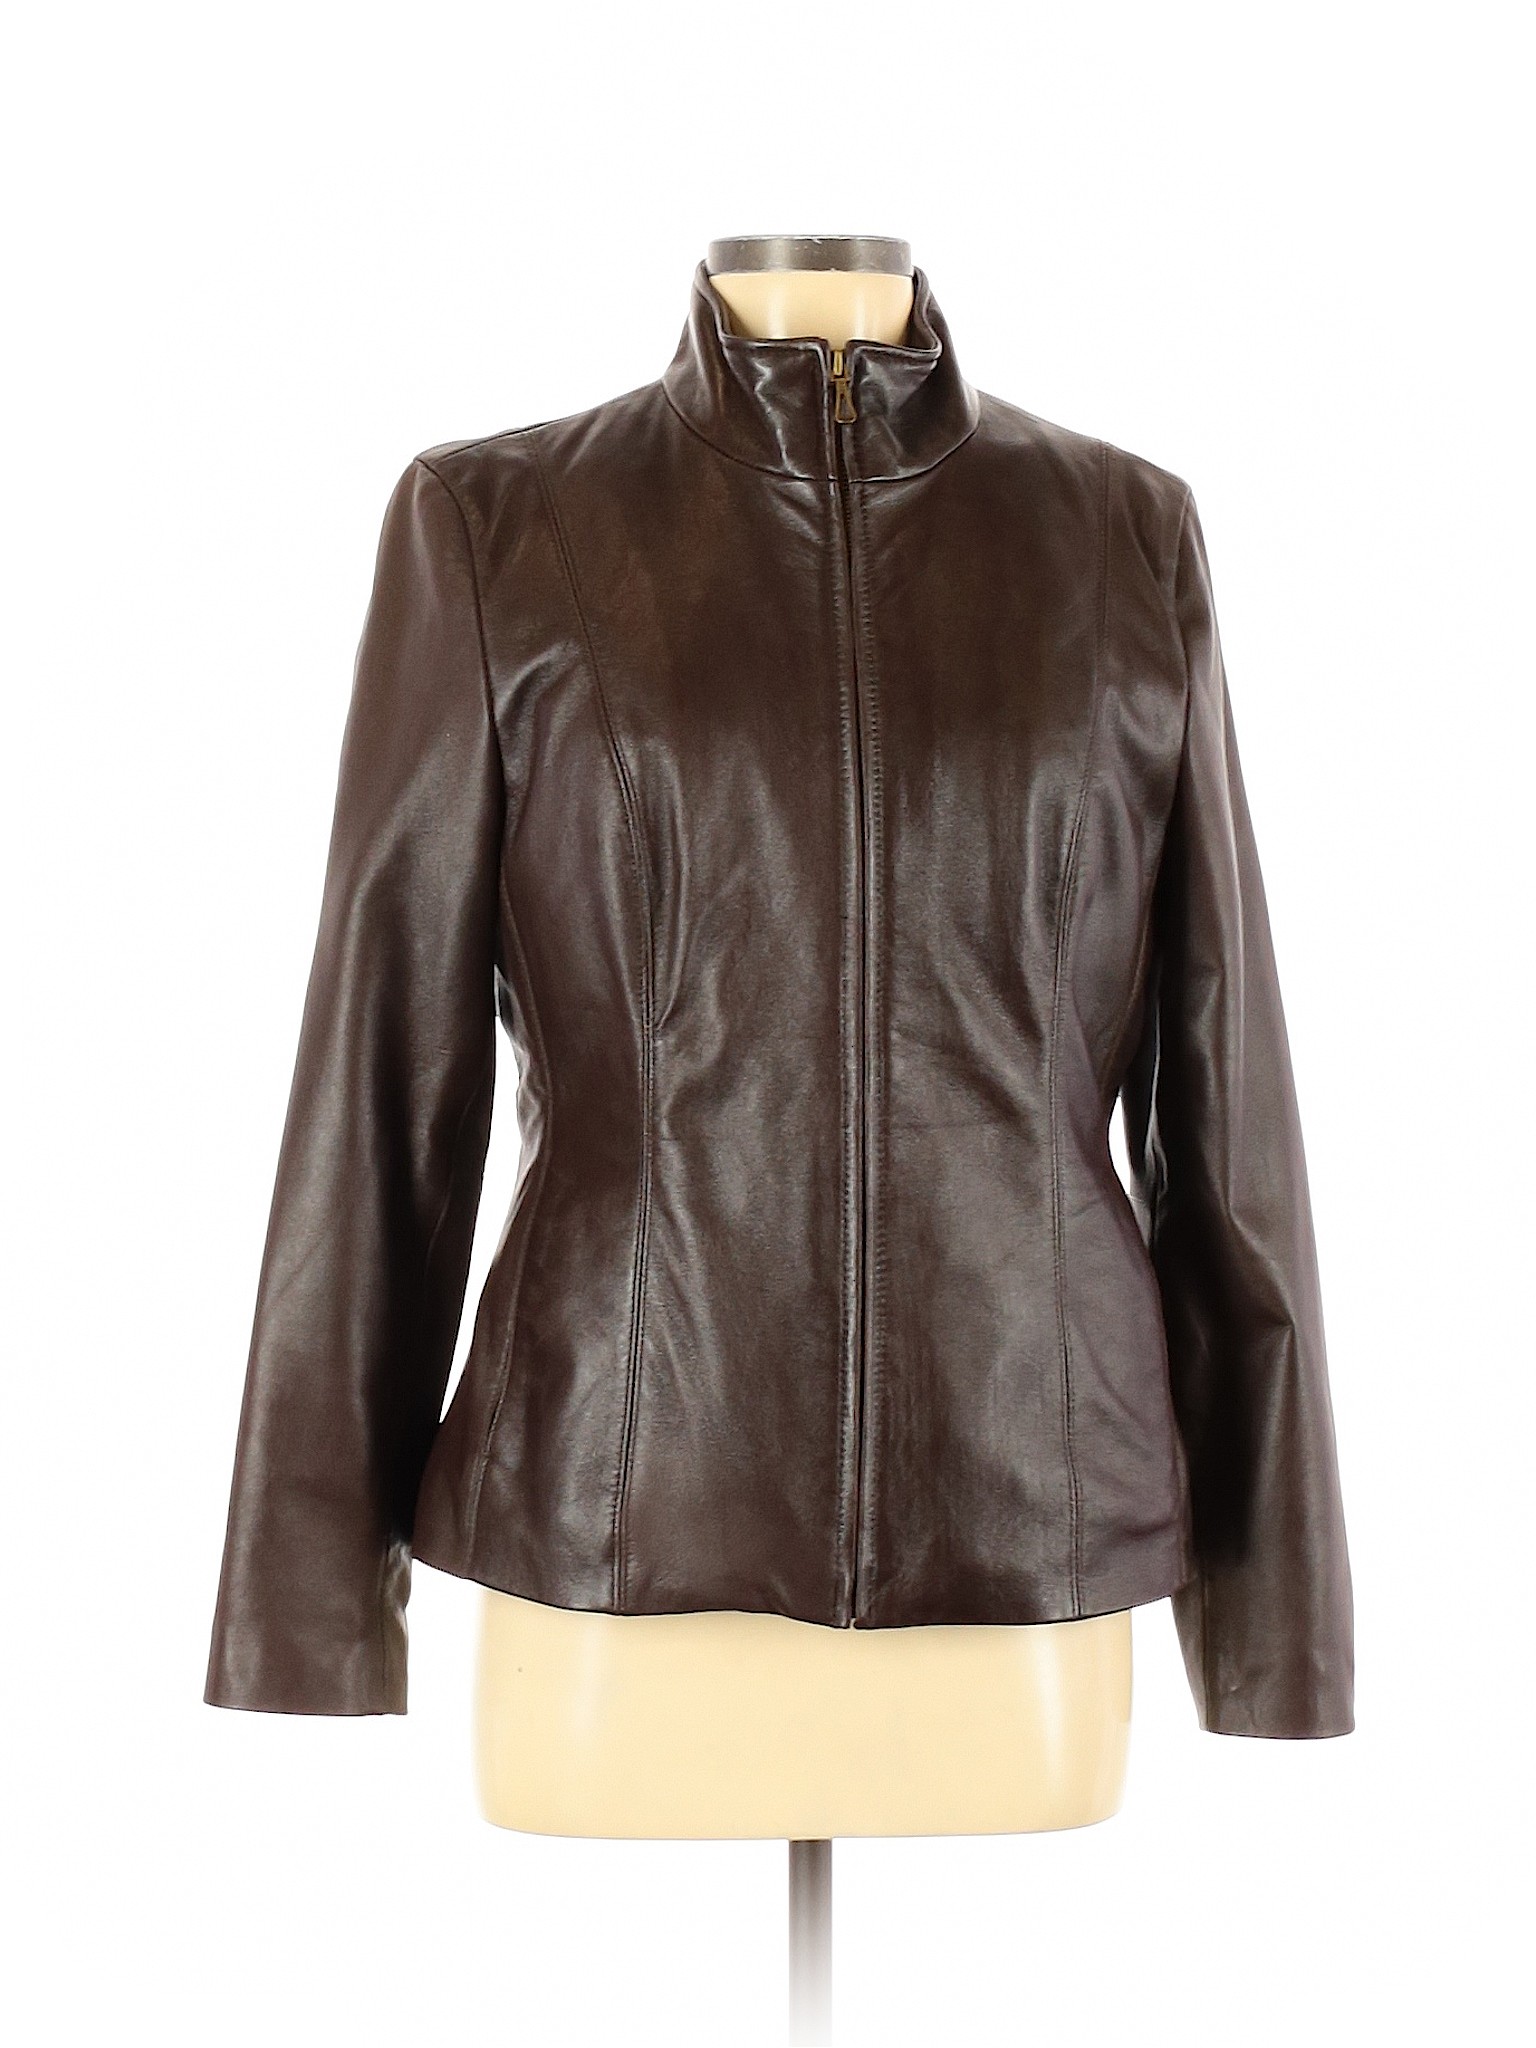 Assorted Brands Women Brown Jacket M | eBay